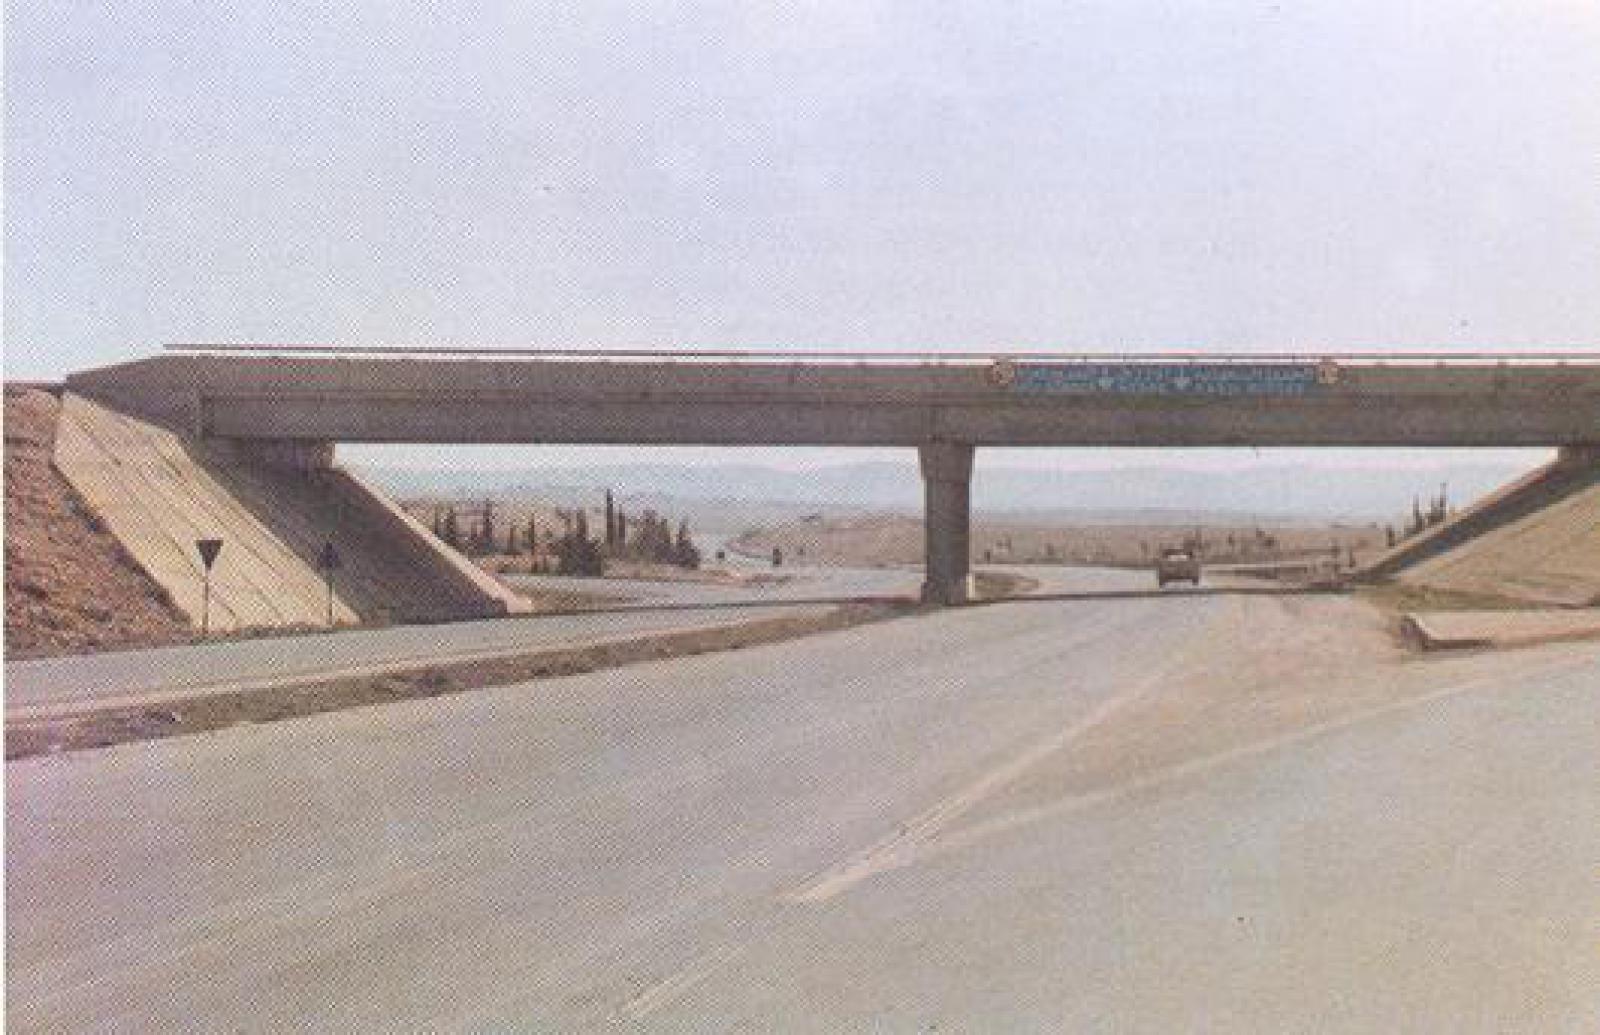 Juwaideh - Muwaqqar & Azraq - Muwaqqar Highway 